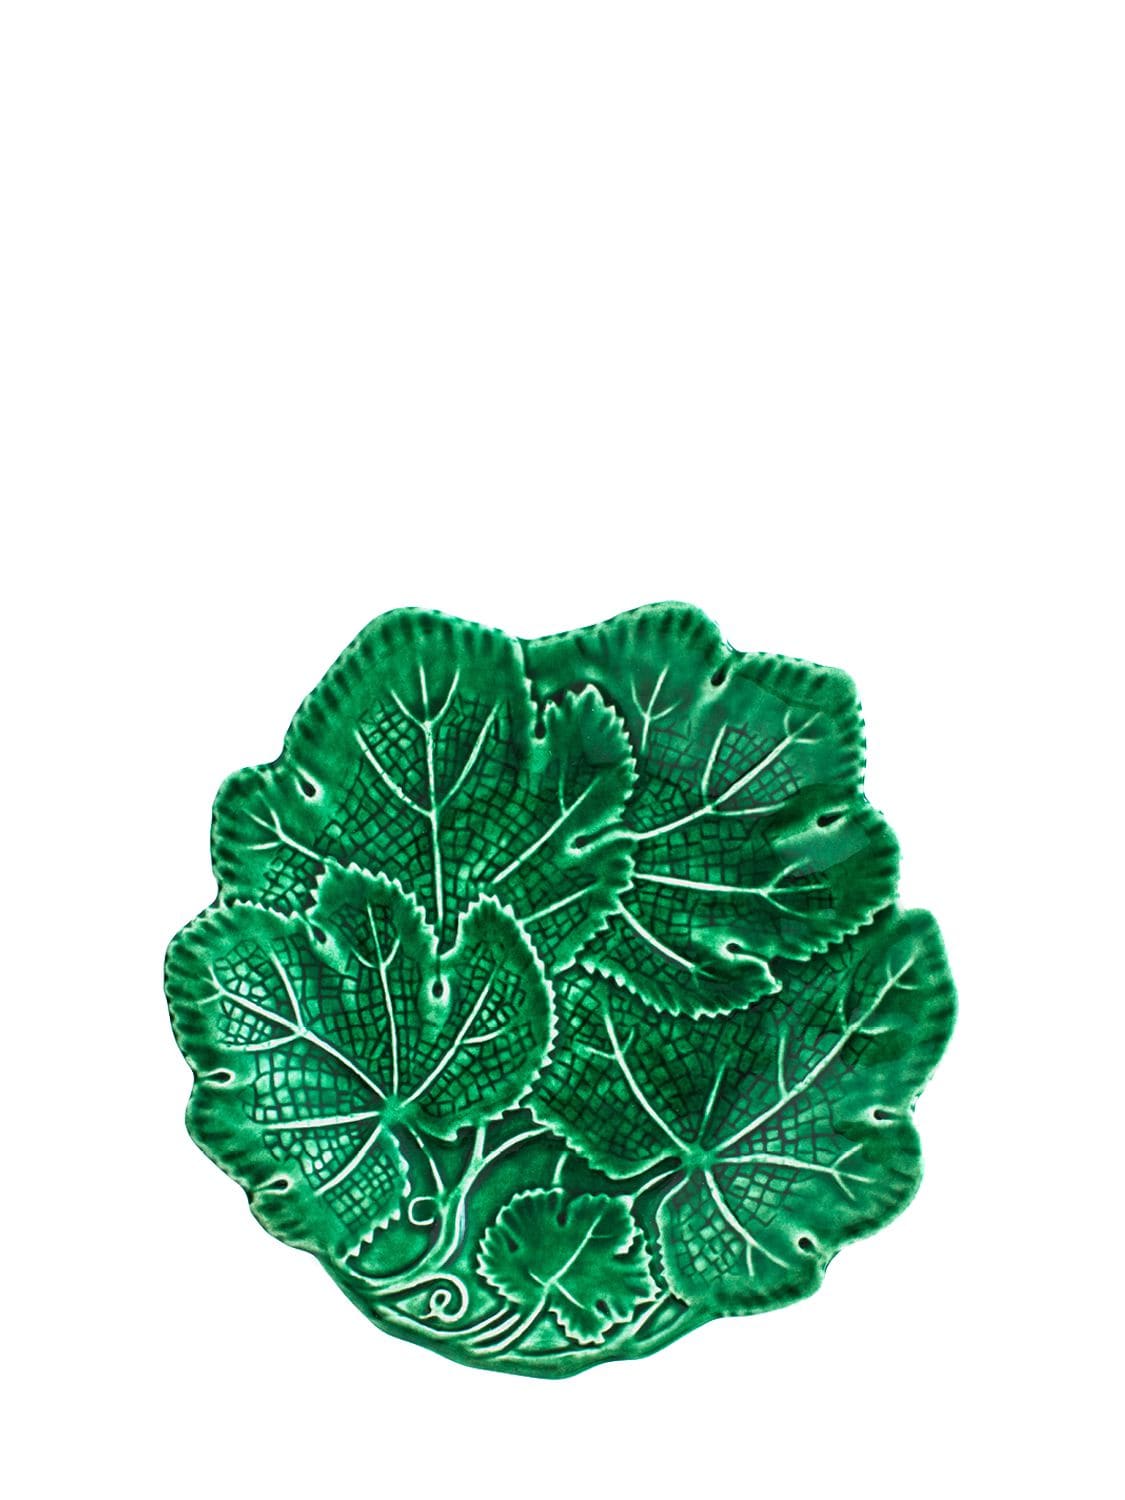 Image of Vine Leaf Fruit Plate